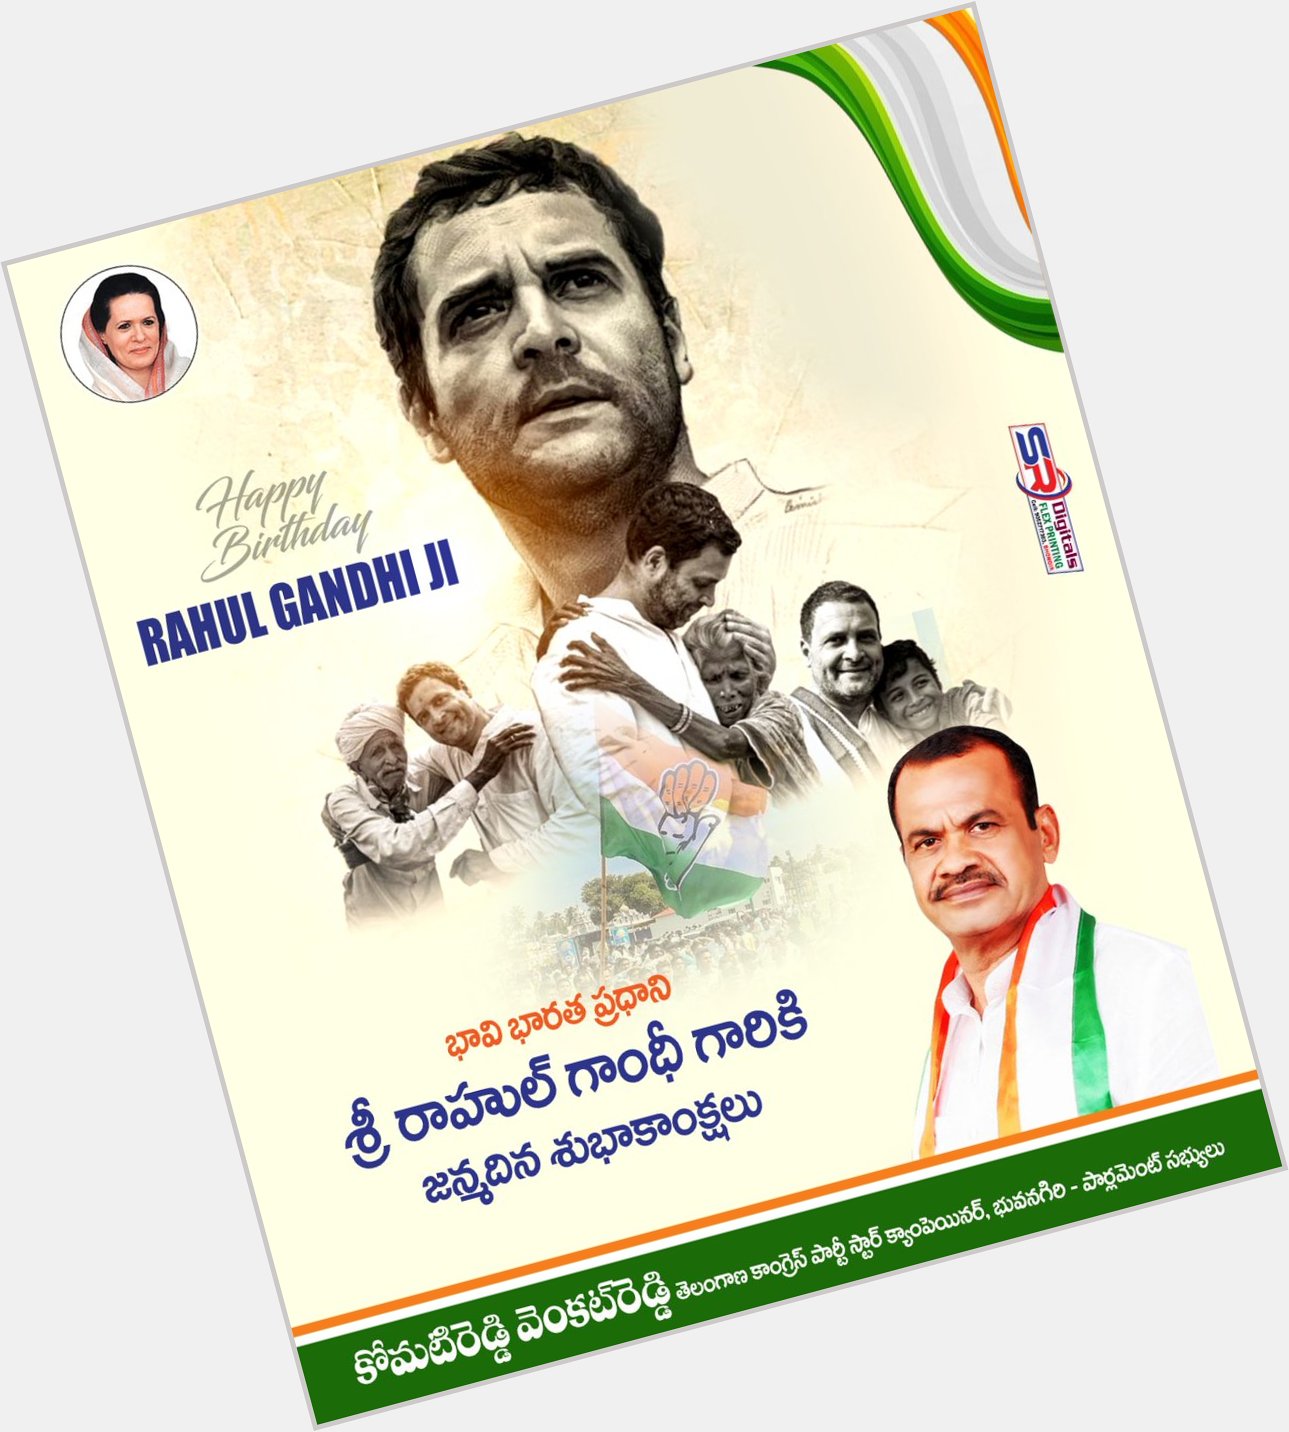  Happy Birthday To My Leader Rahul Gandhi Ji..  